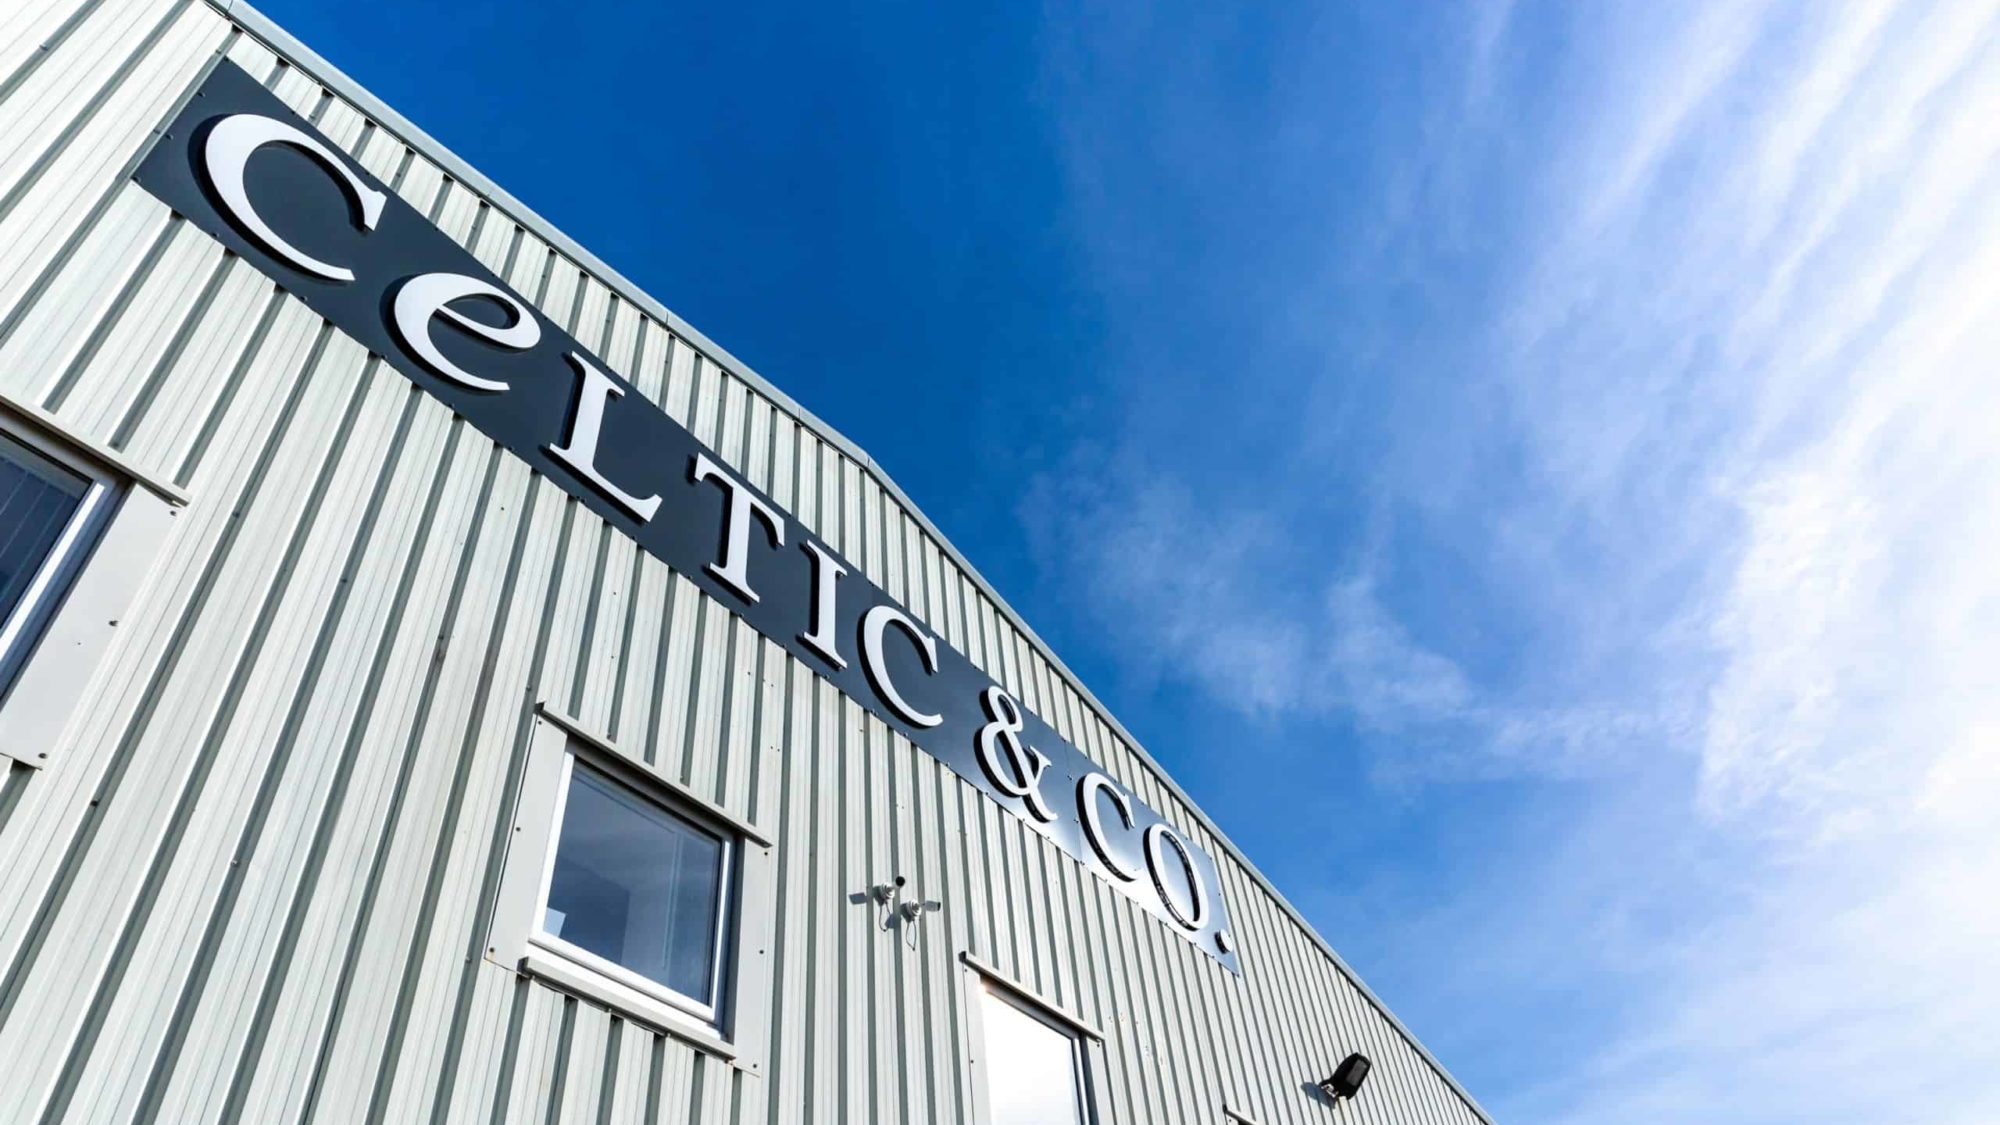 Celtic & Co expands to larger premises